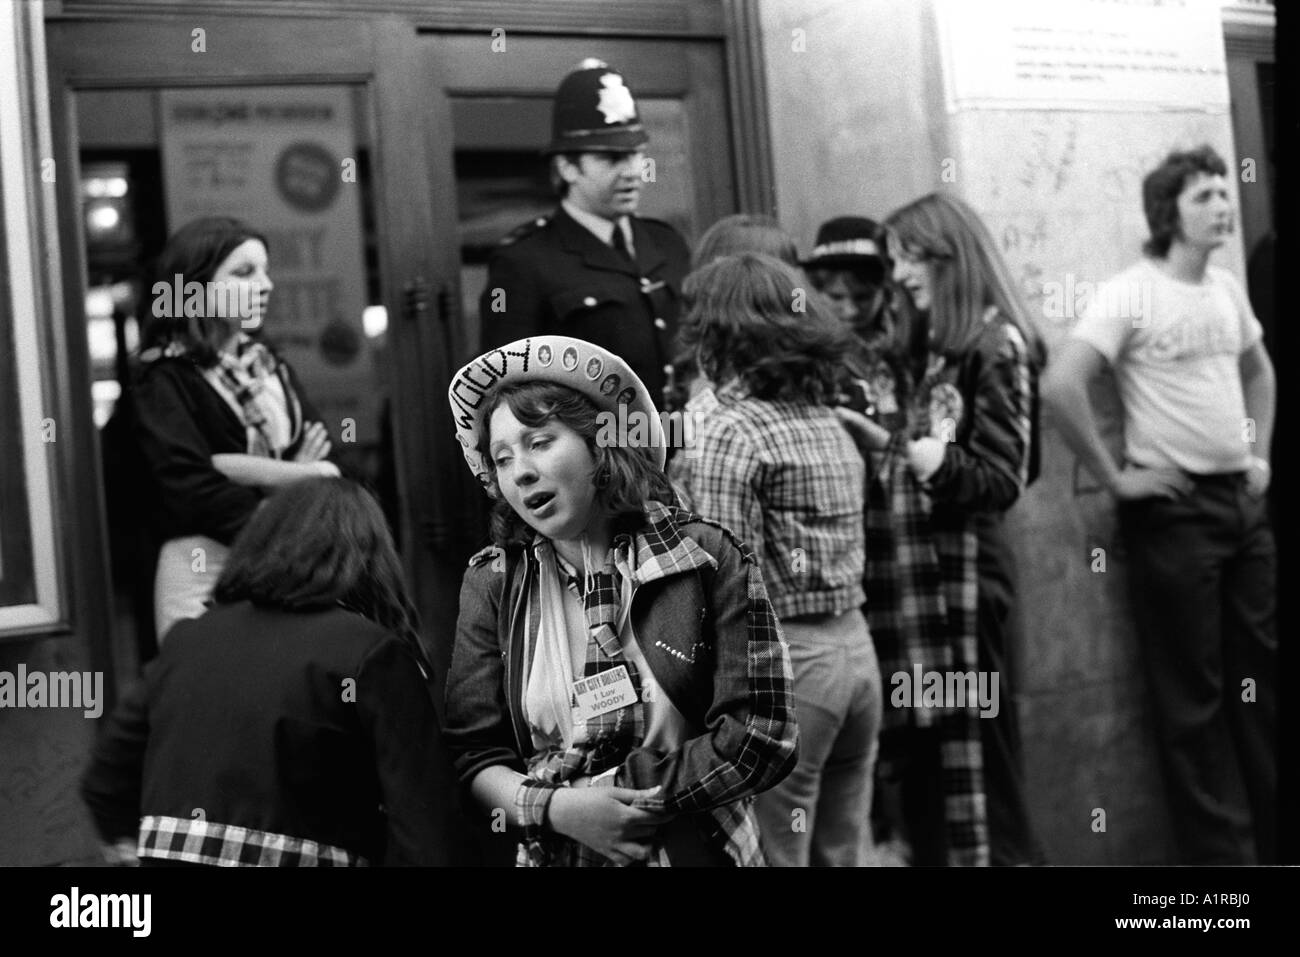 Groupe pop Bay City Roller Fans assister à un concert au Hammersmith Odeon l'ouest de Londres. Pleurer après la fin de la performance. Années 1970, 1975. HOMER SYKES Banque D'Images